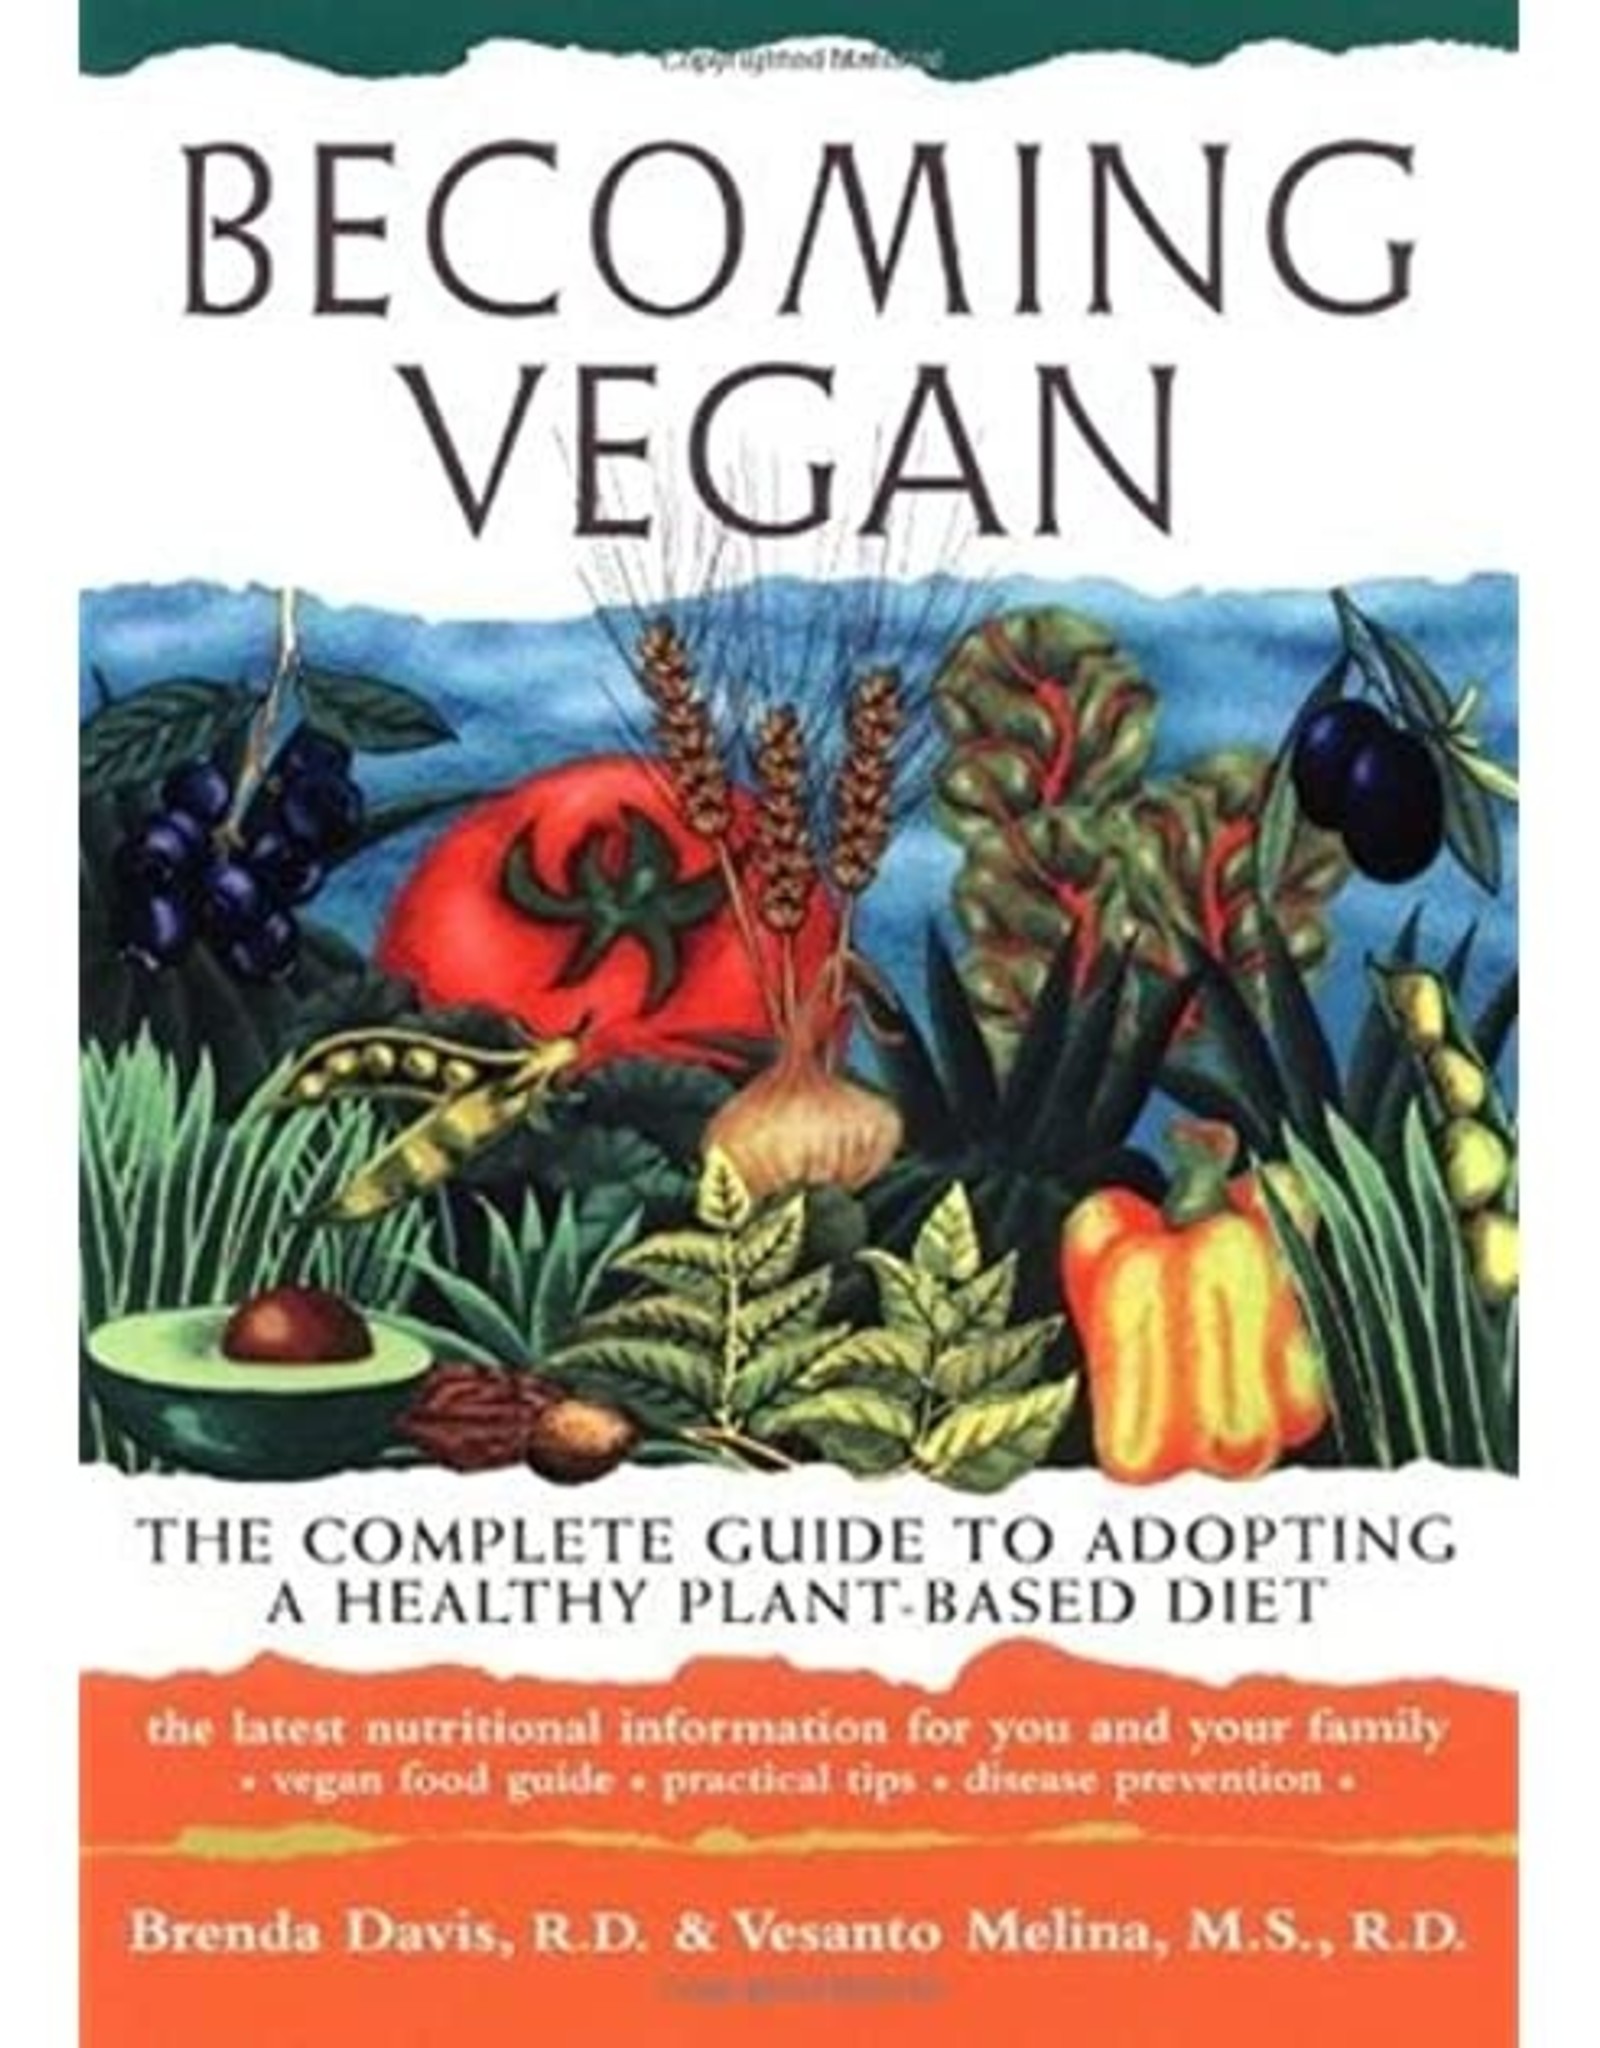 Brenda Davis Becoming Vegan by Brenda Davis & Vesanto Melina